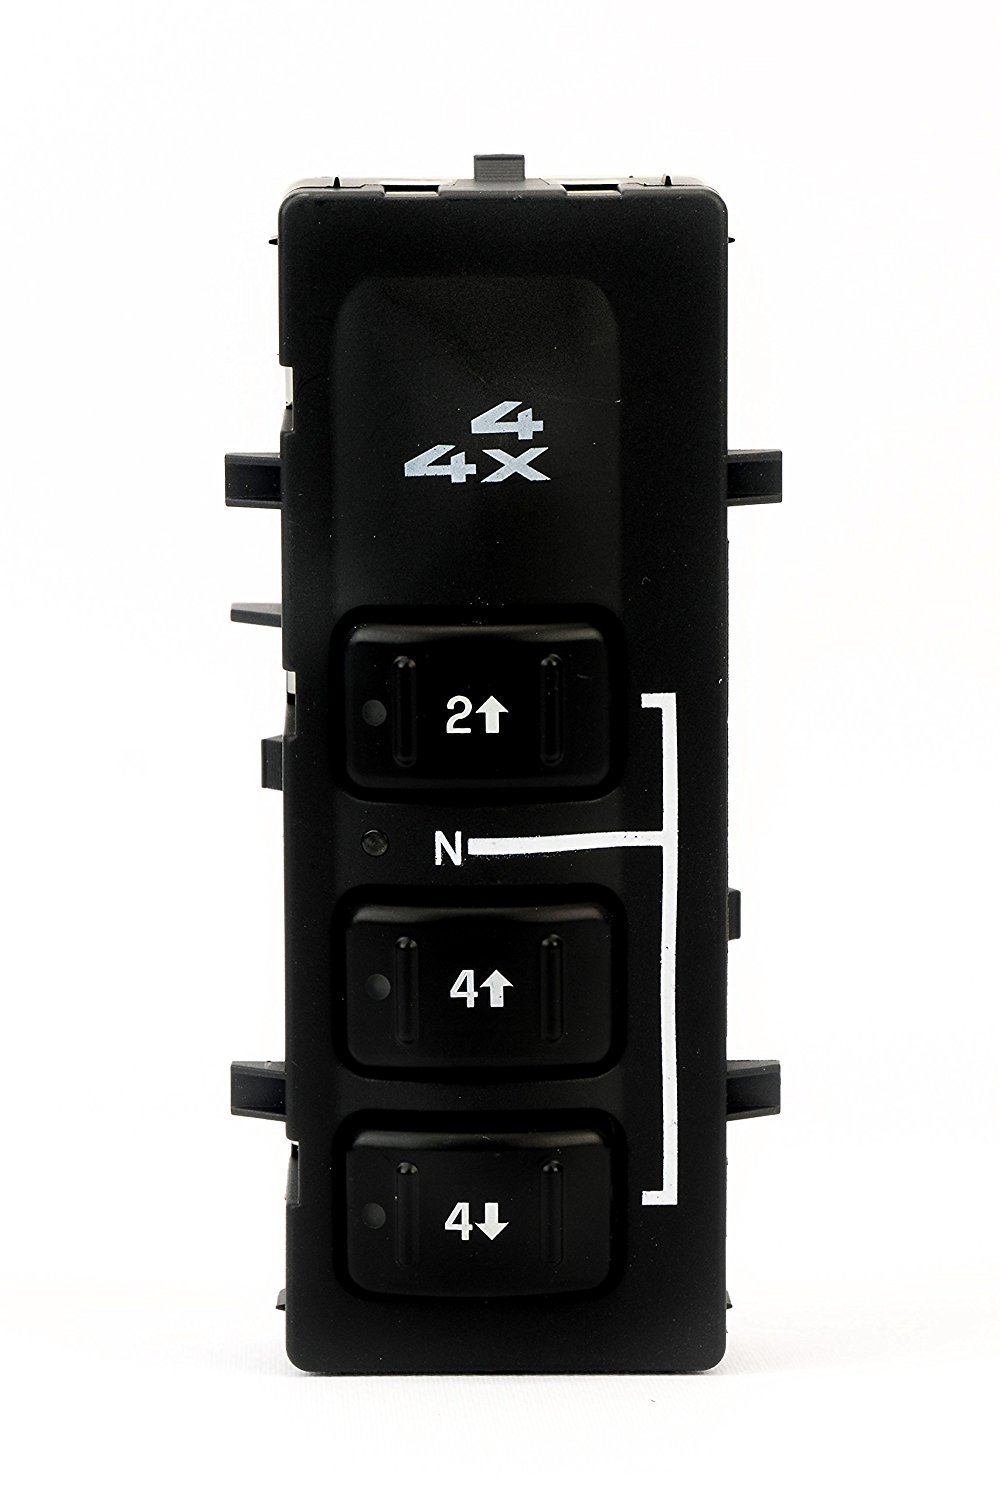 New 4WD 4X4 Wheel Drive Selector Switch Fits GMC Sierra 1500 2500 2500 HD 3500